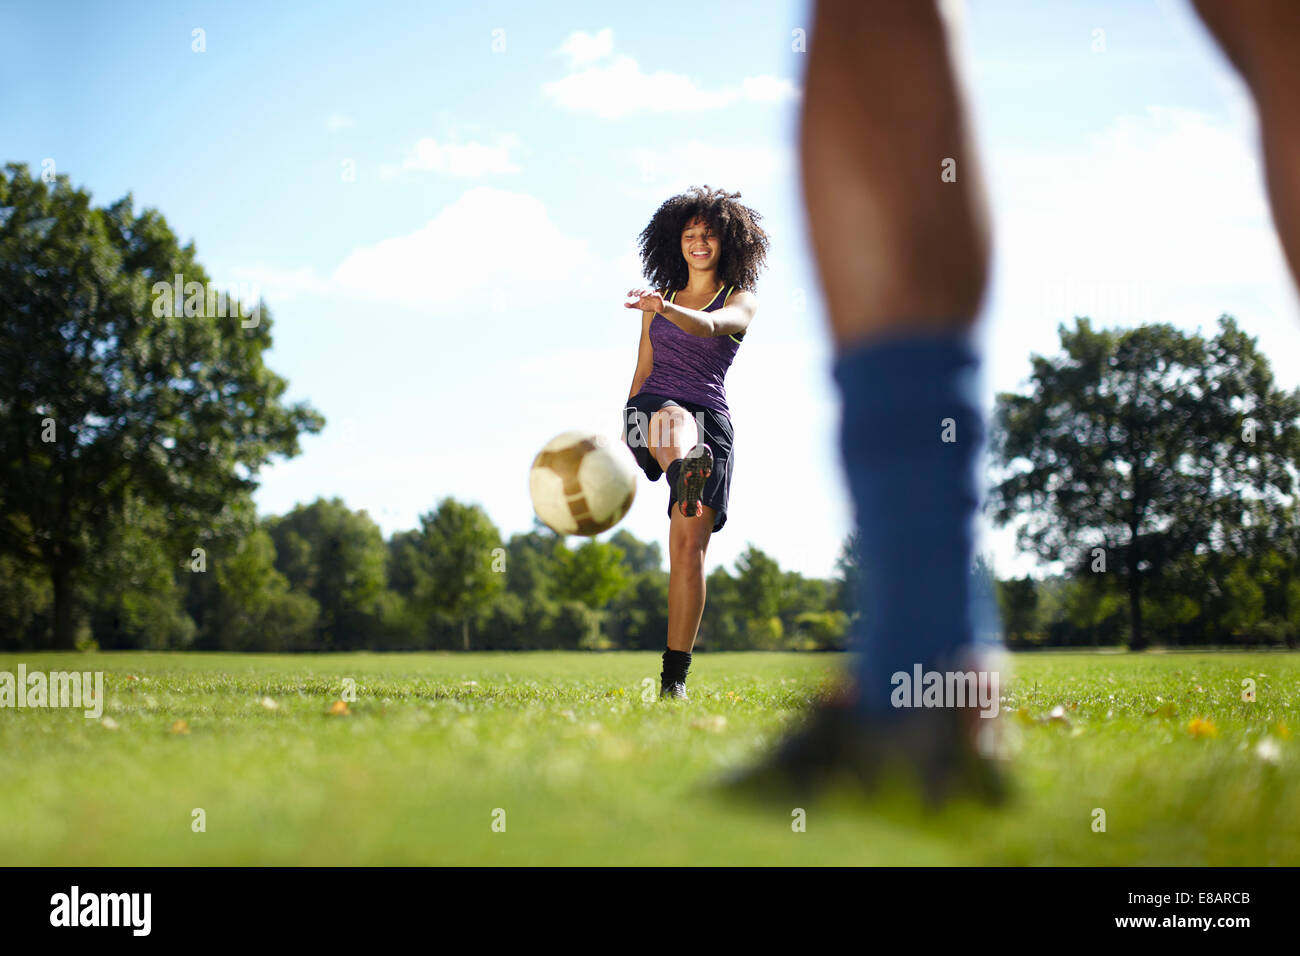 Junge Frau treten Fußball in Richtung Freund im park Stockfoto